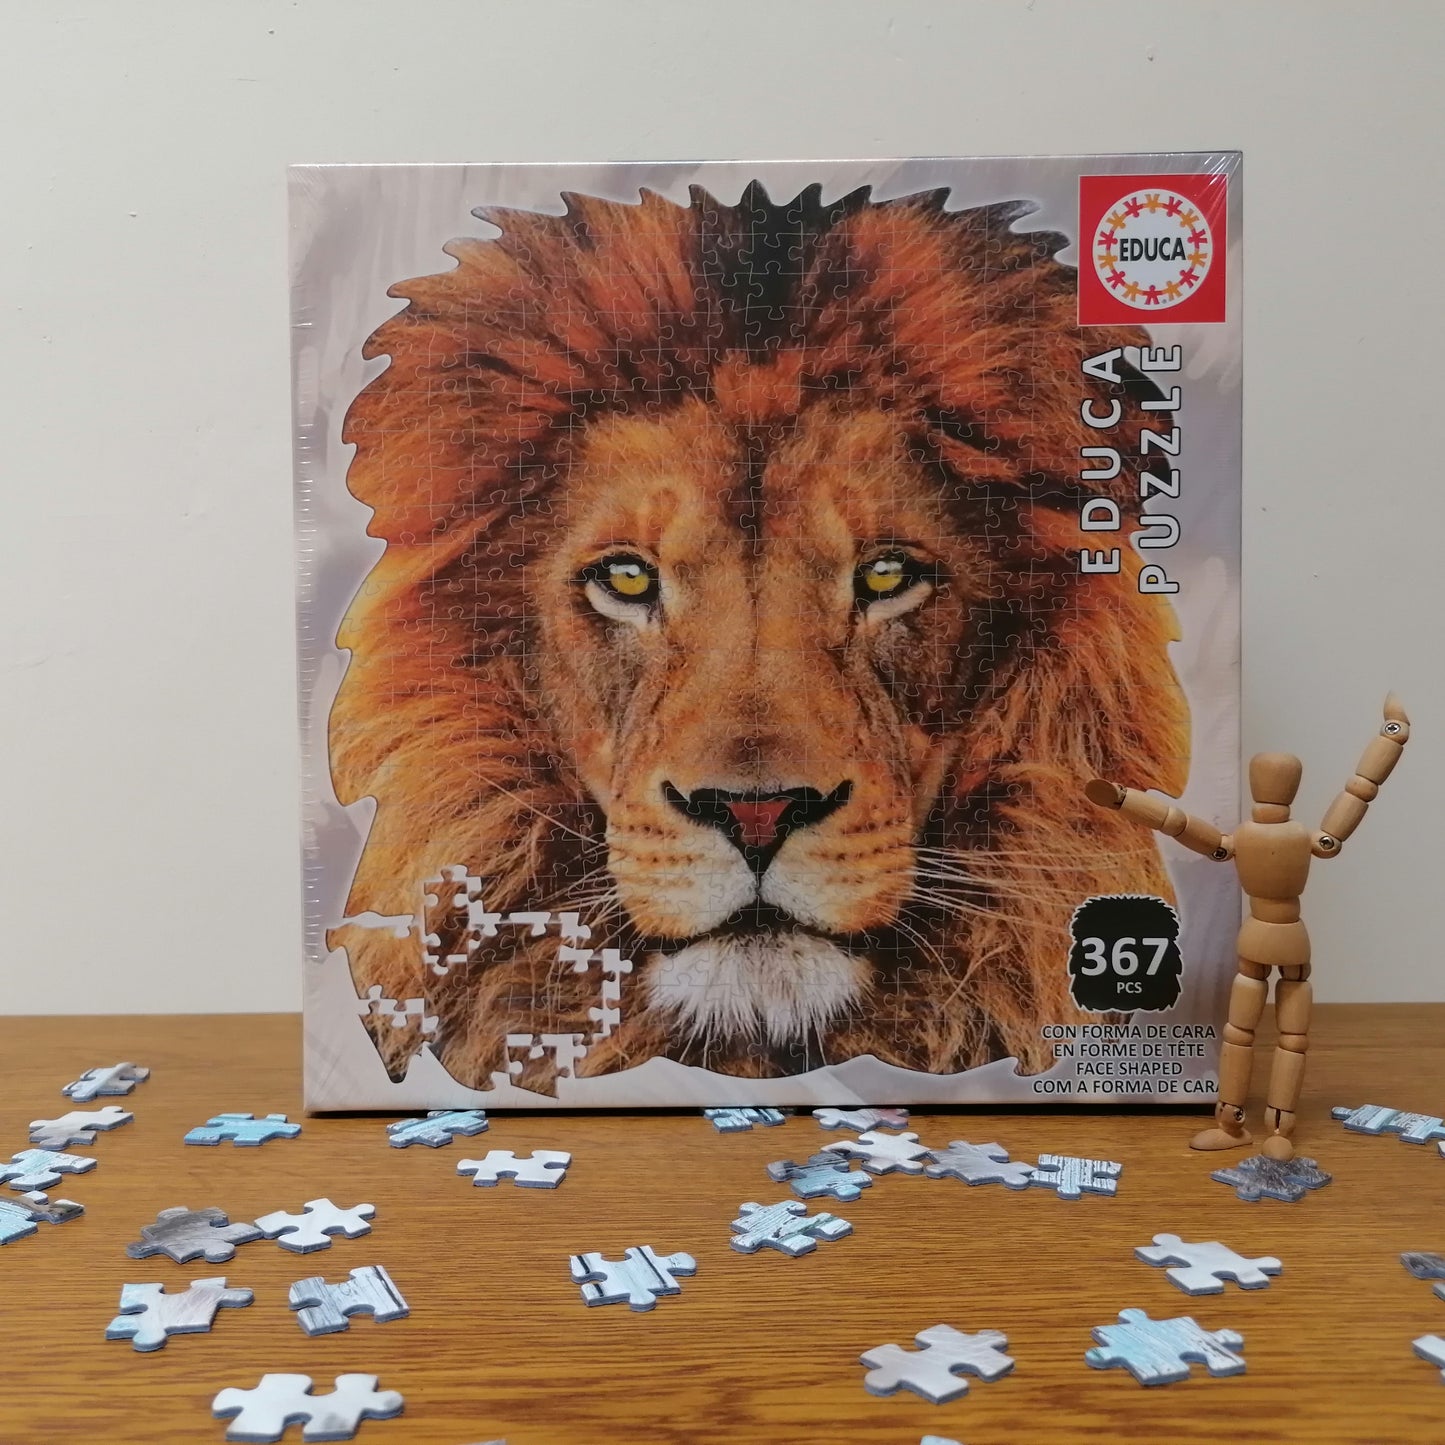 León puzzle silueta - 367 piezas